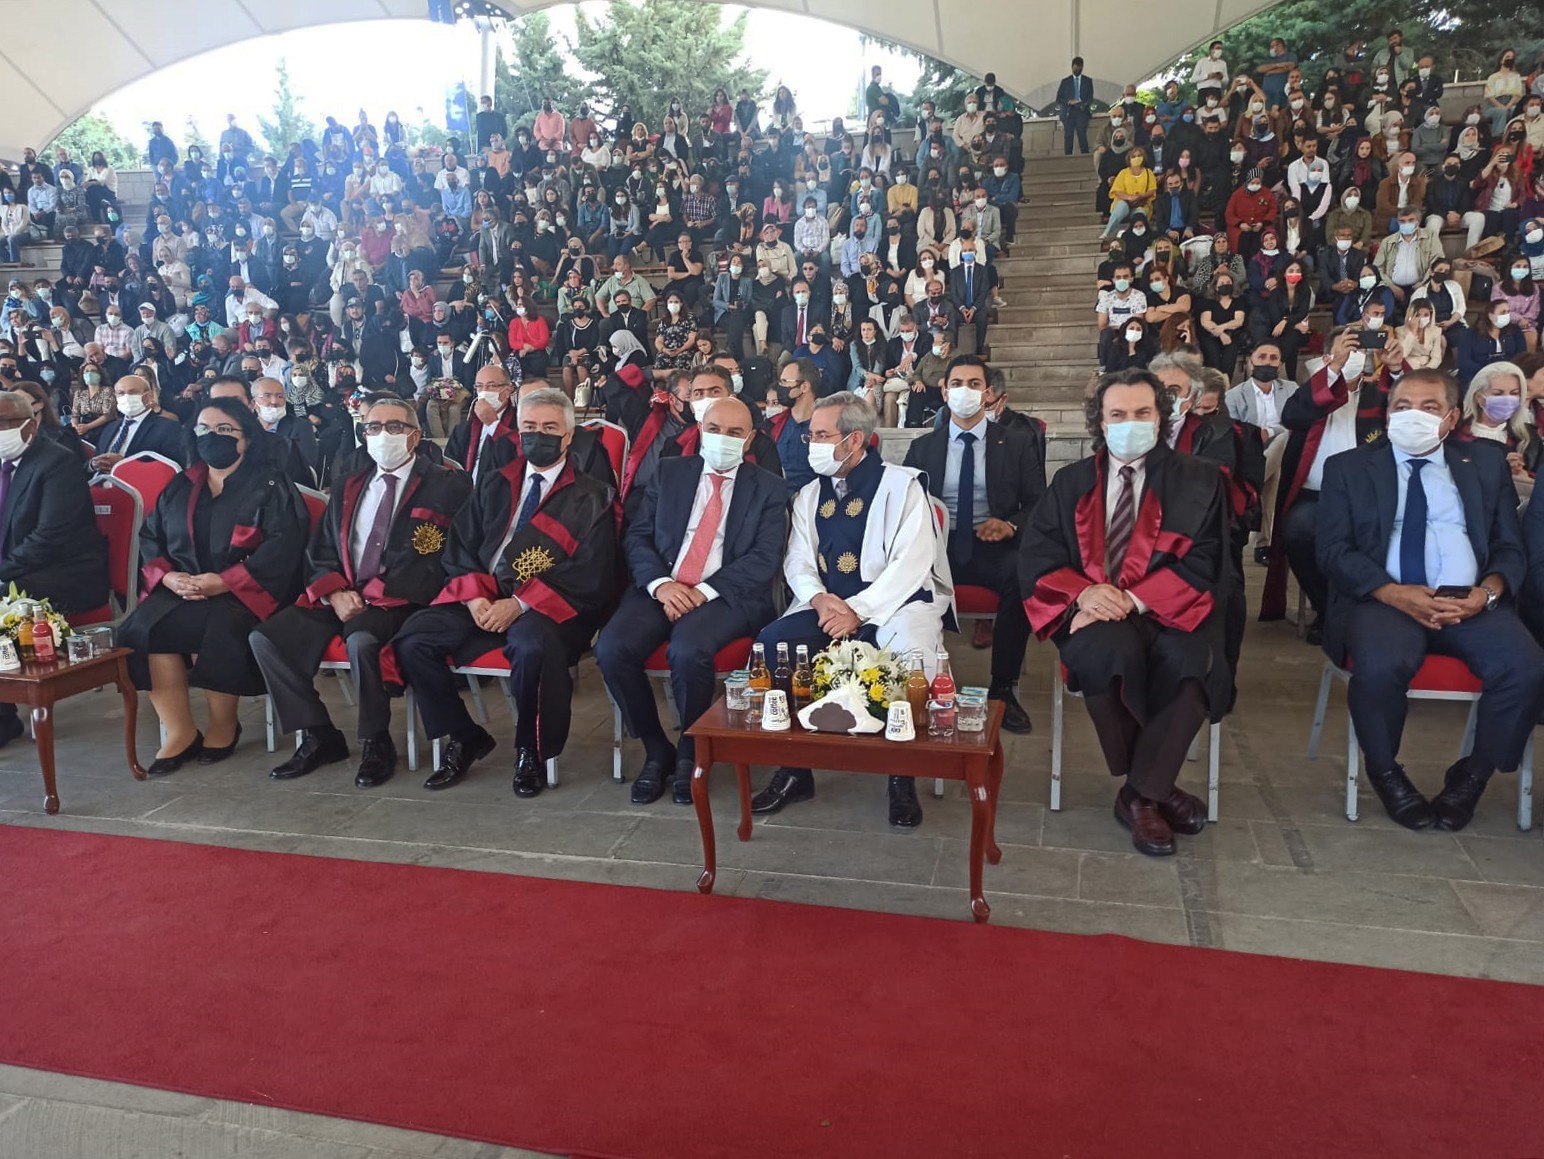 Keçiören Belediye Başkanı Altınok’tan mezun öğrencilere iş müjdesi #ankara